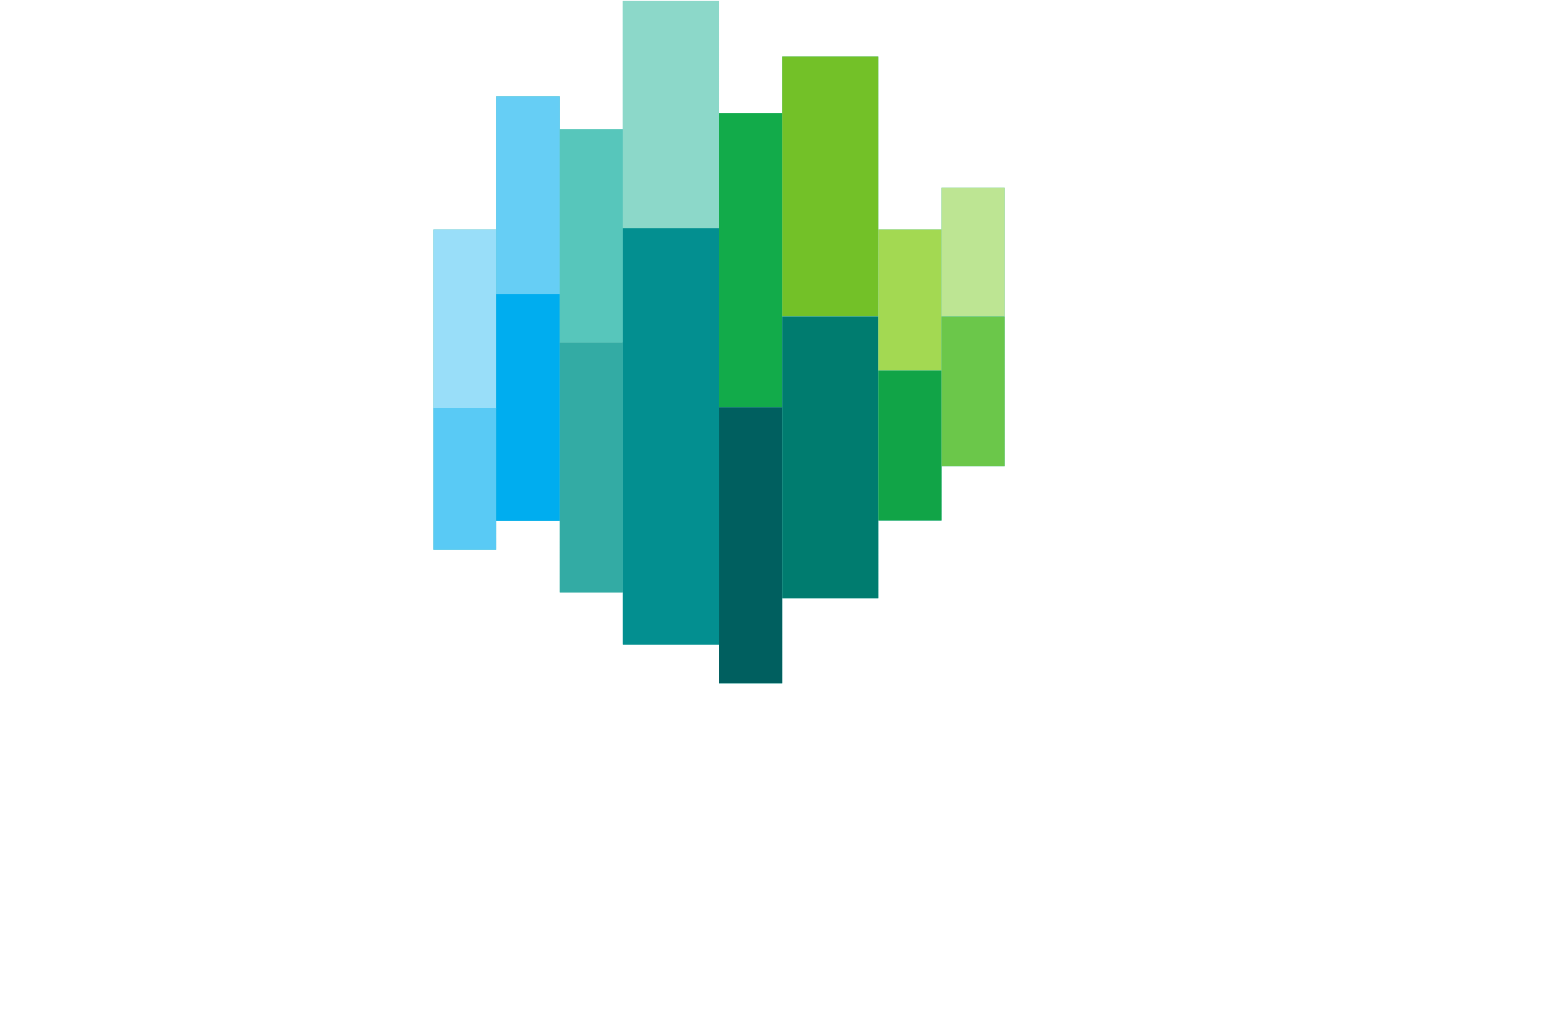 Euronext logo large for dark backgrounds (transparent PNG)